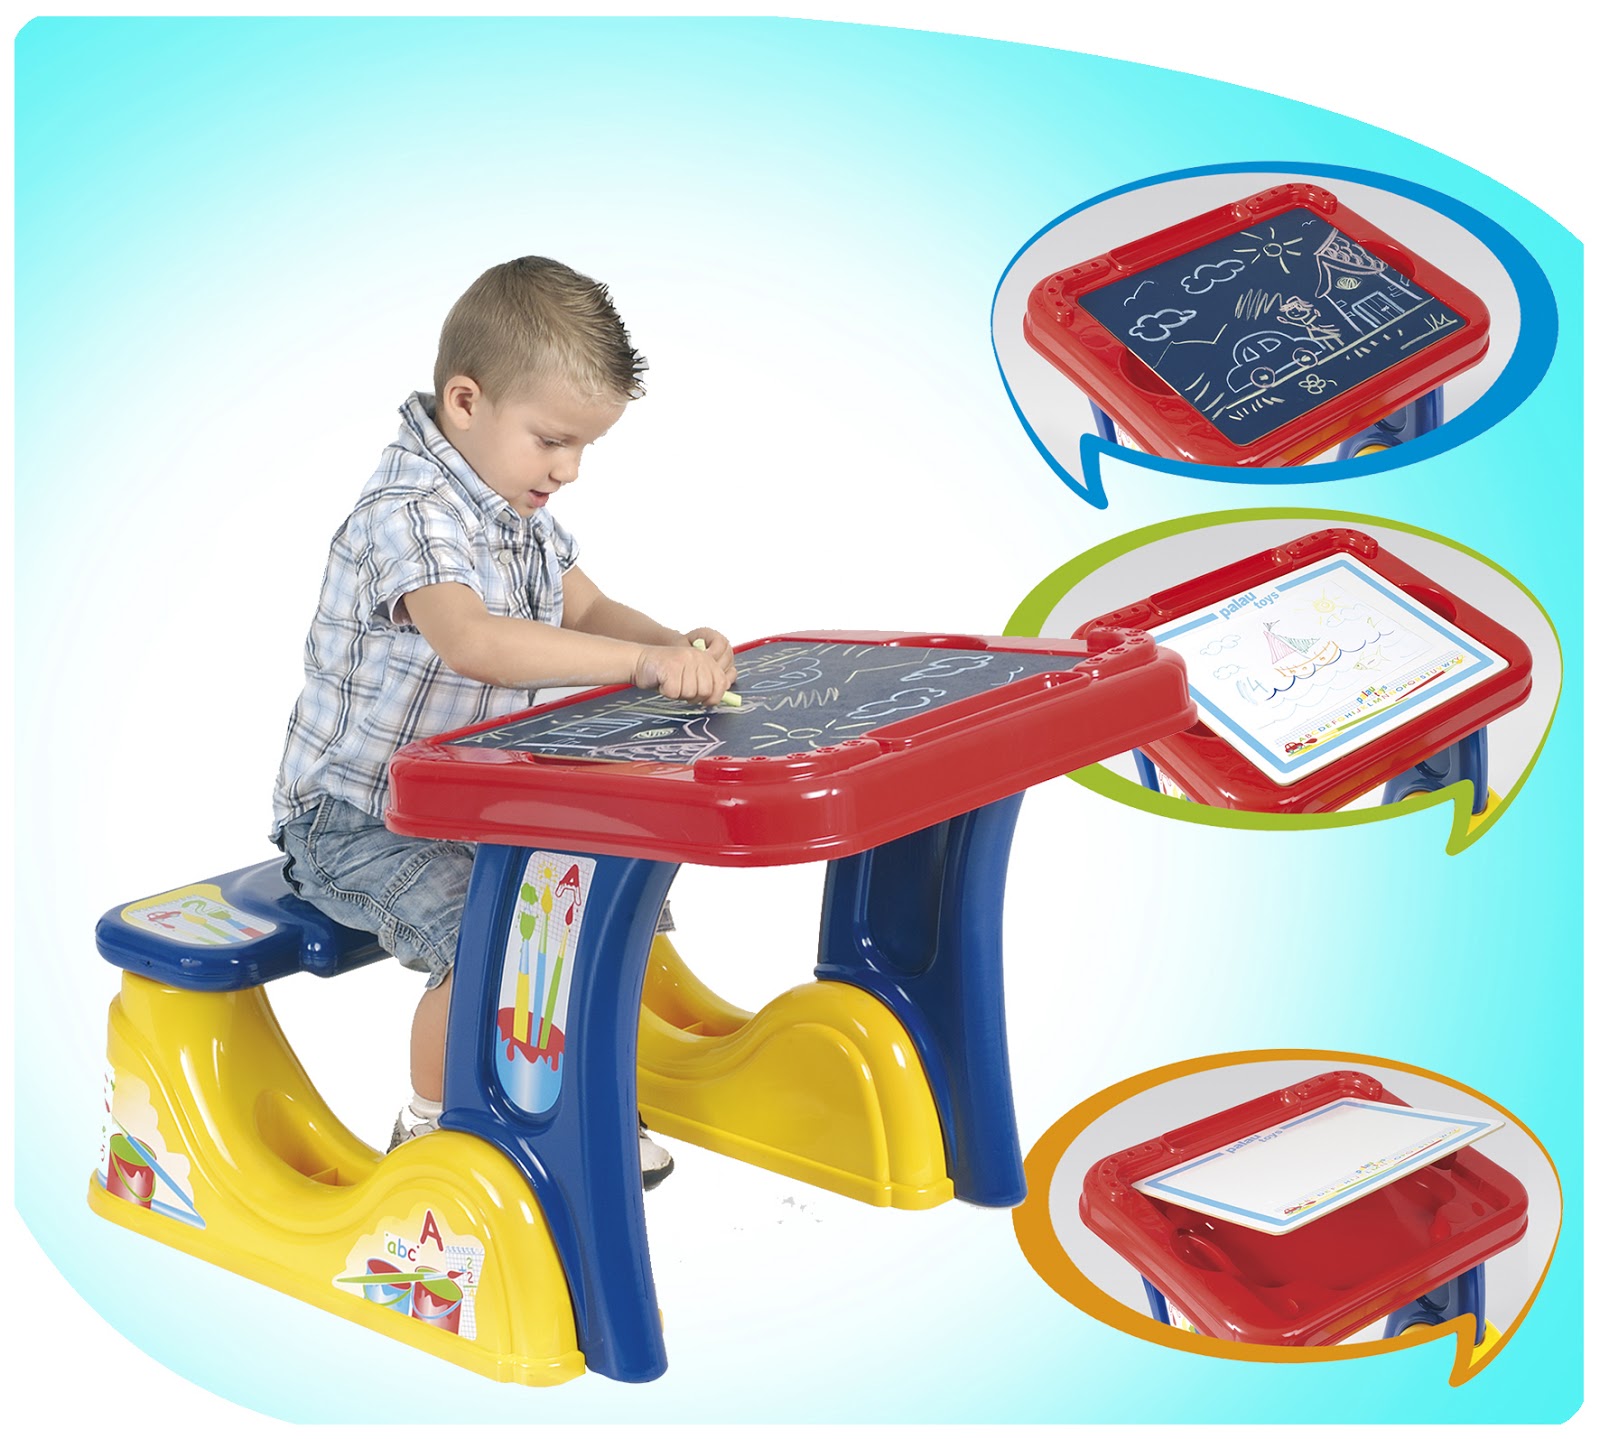 Palau Toys: Juguetes para niños de 3 a 6 años: la ...